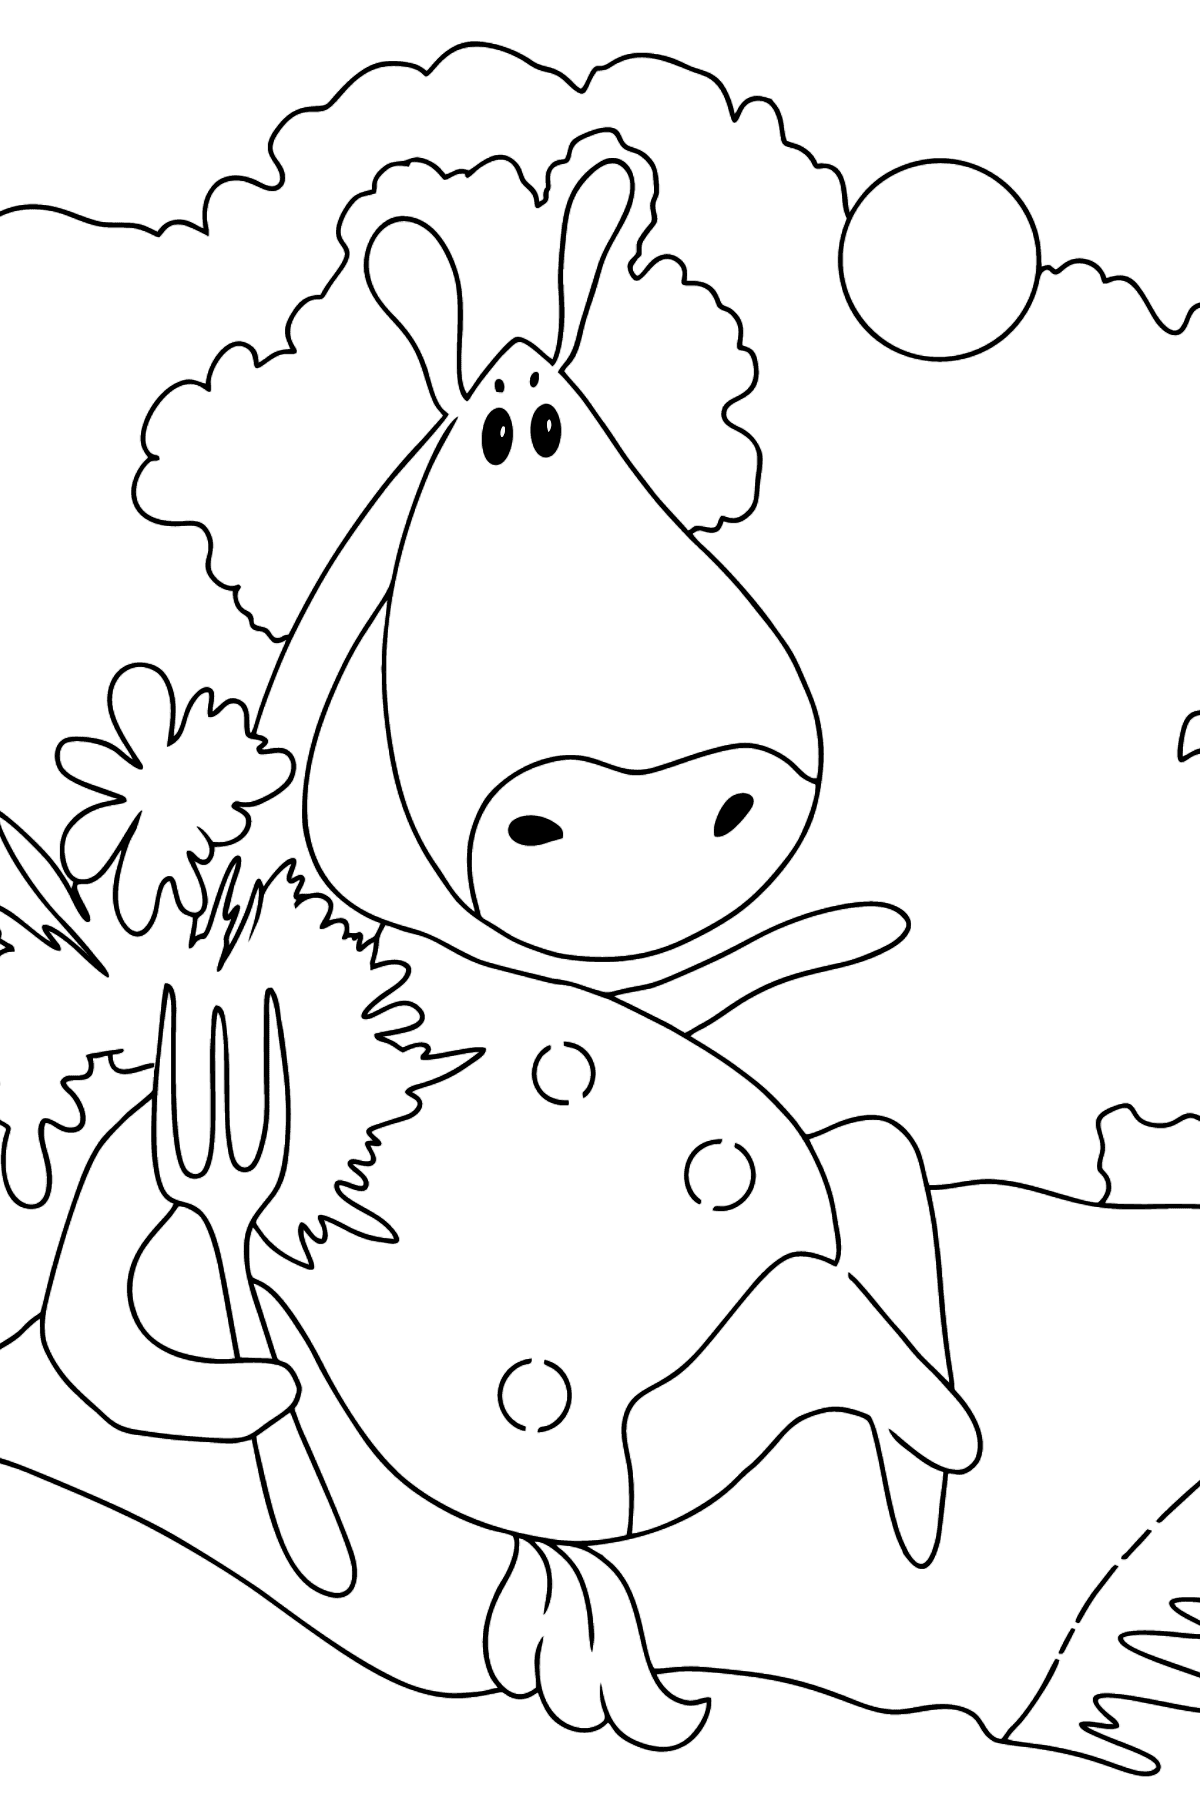 Desenho de cavalo mágico para colorir fácil - Imagens para Colorir para Crianças